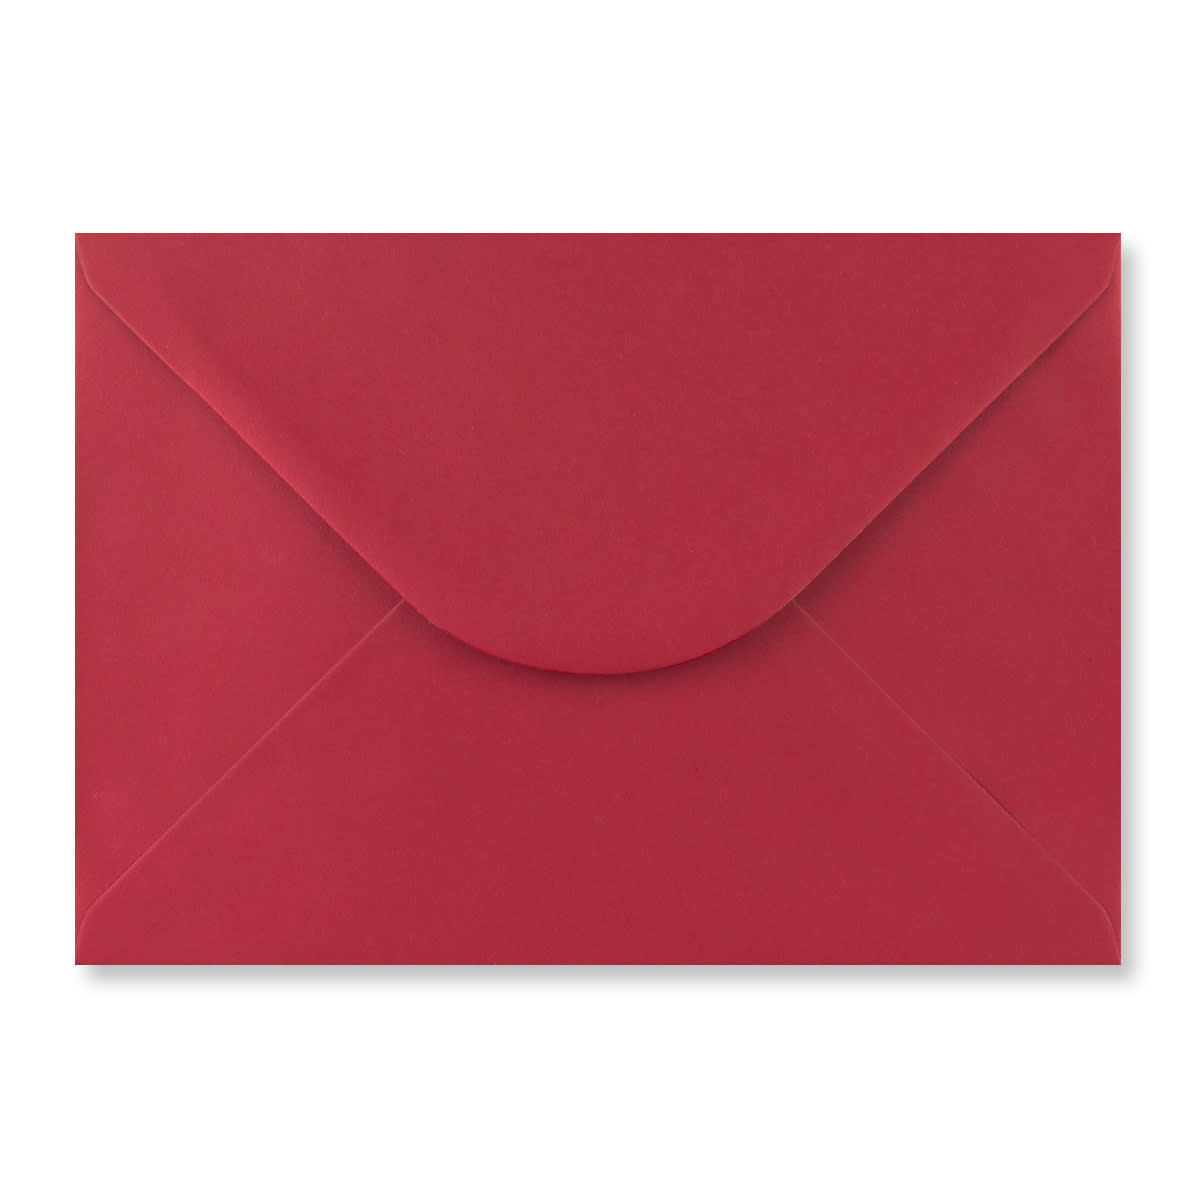 Scarlet Red 158 x 220mm Envelopes 100gsm